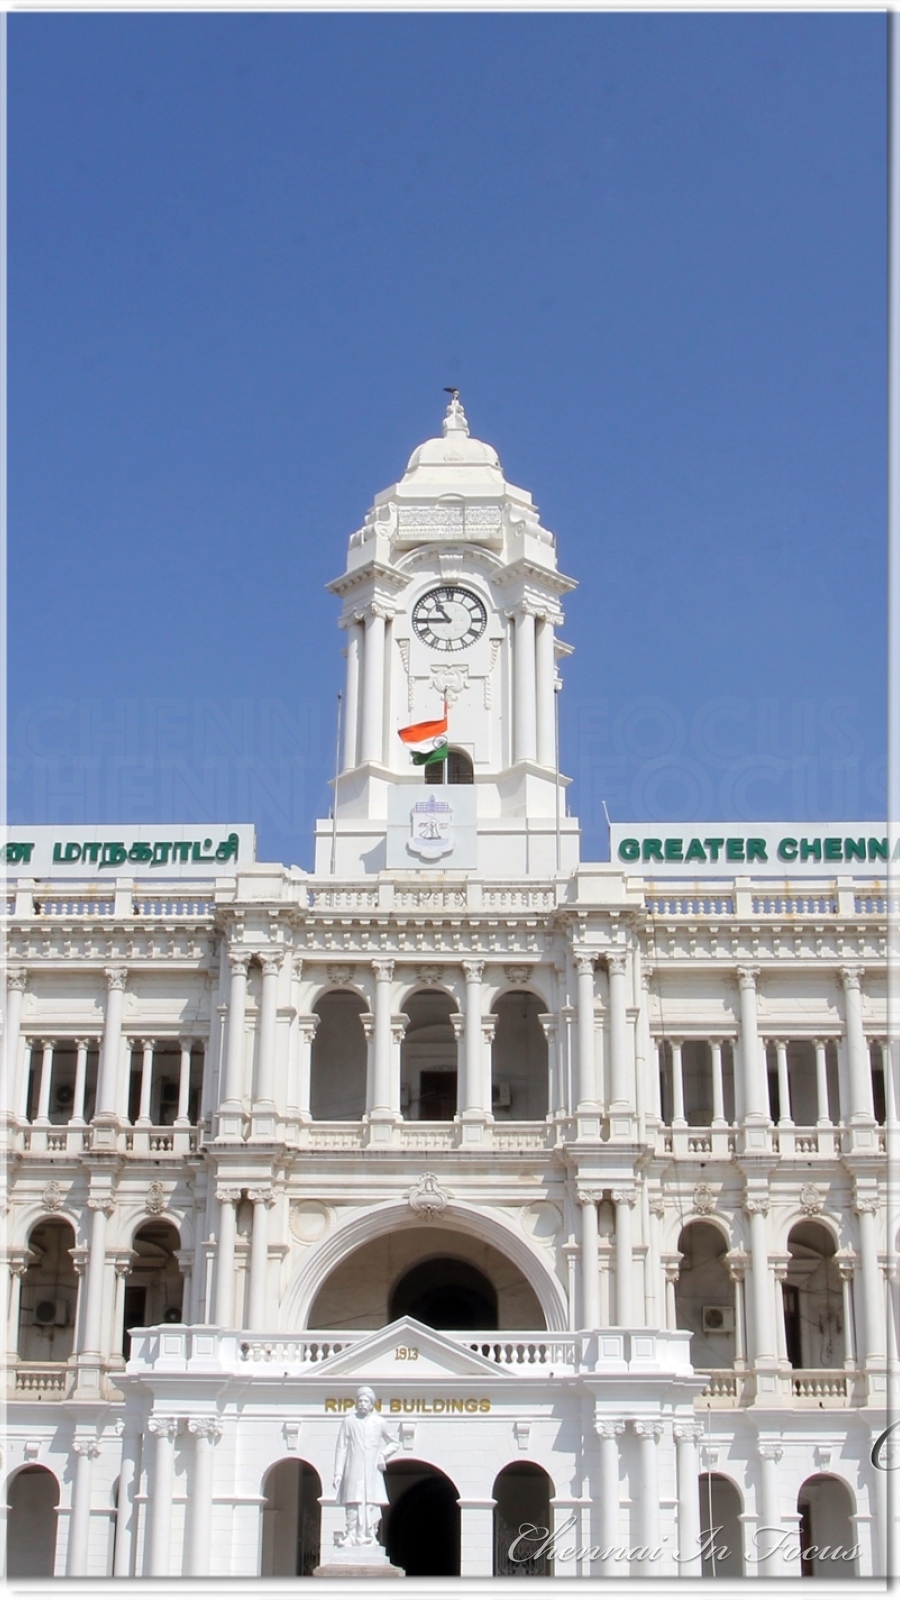 Ripon Building Chennai Corporation - Chennai In Focus